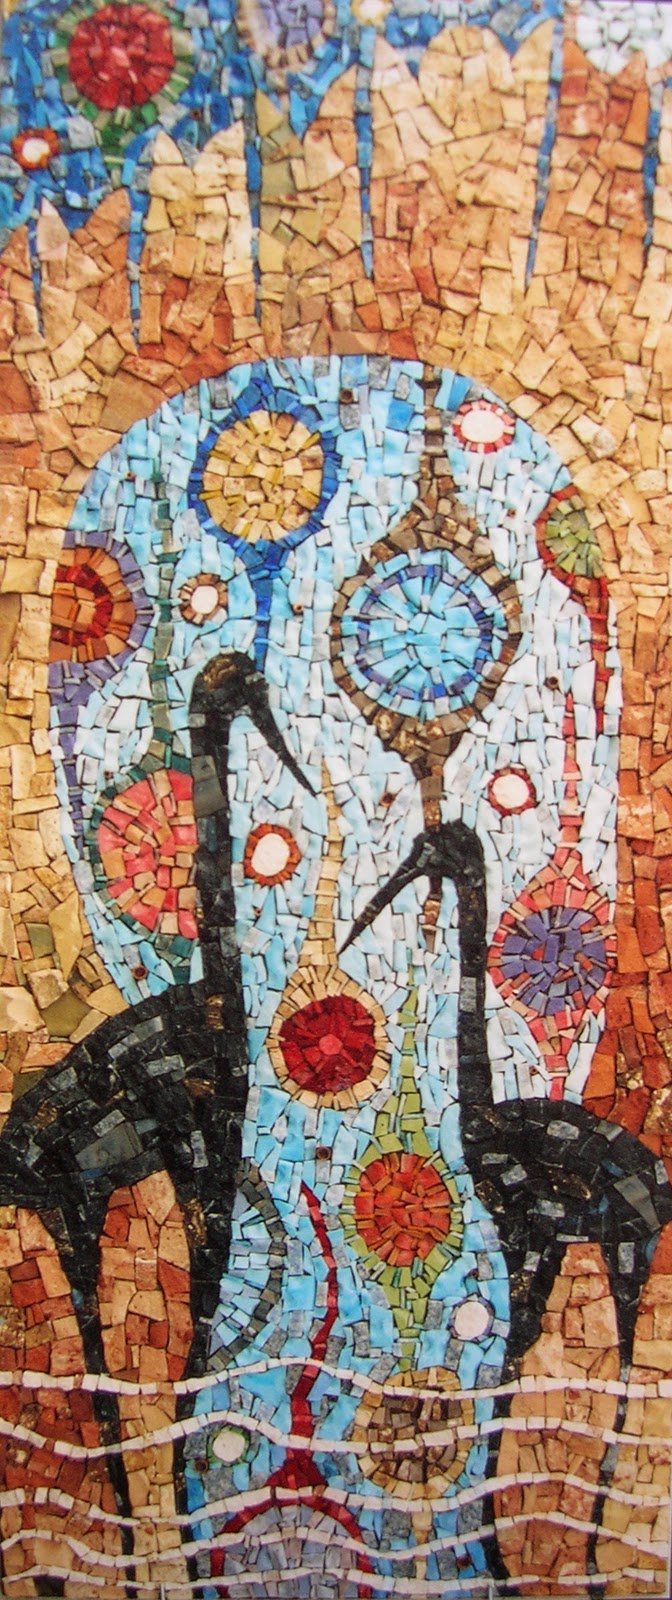 antonella zorzi mosaics: Orders